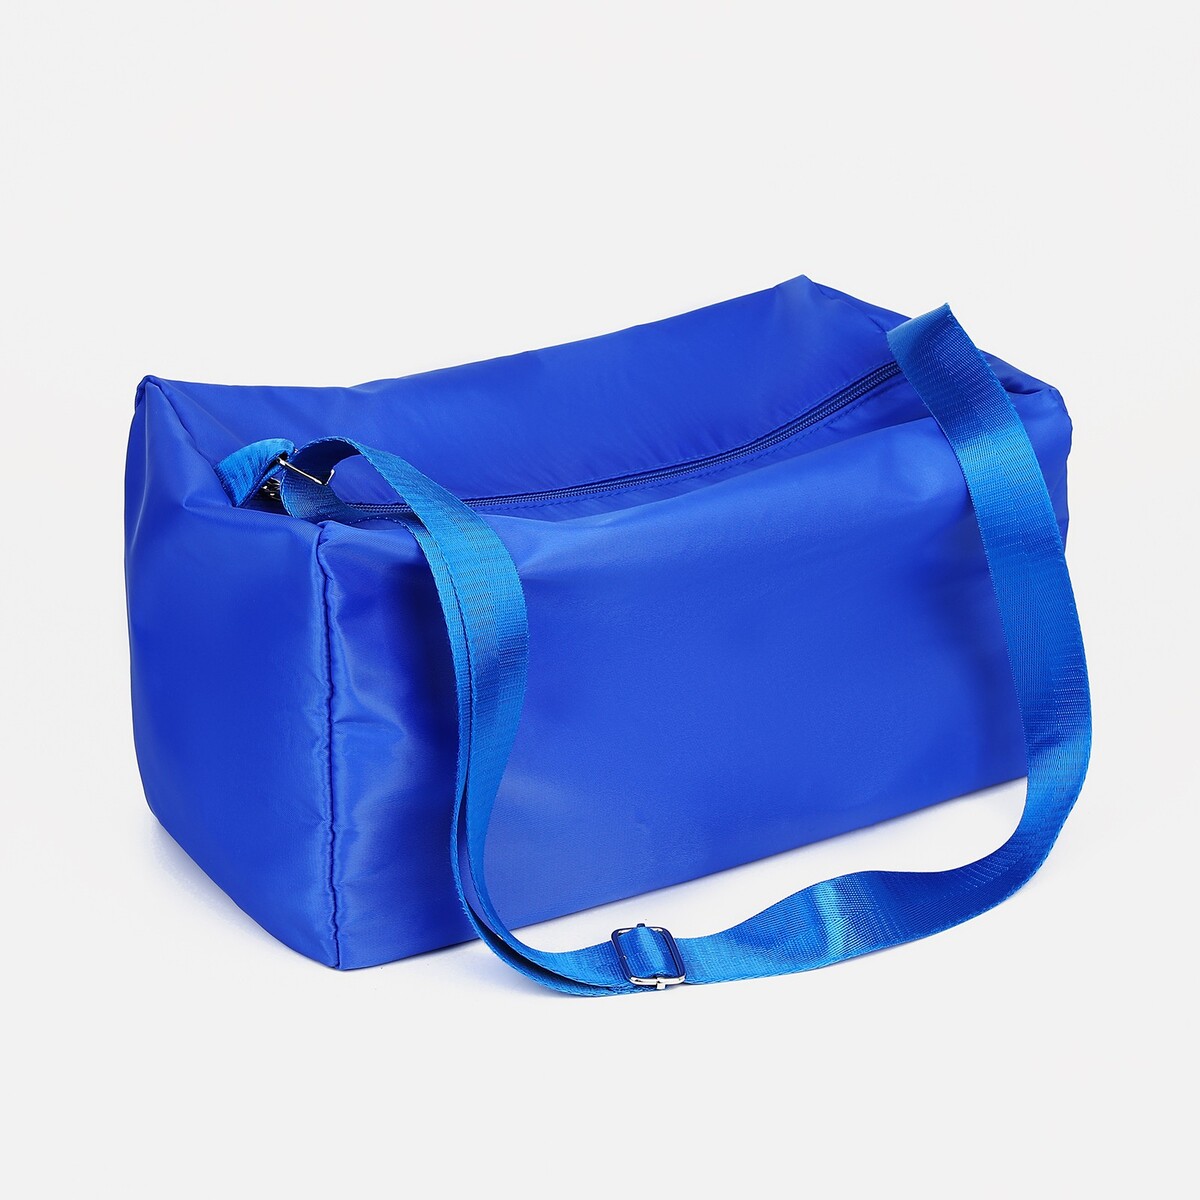 Сумка спортивная на молнии, регулируемый ремень, цвет синий сумка спортивная на молнии регулируемый ремень синий